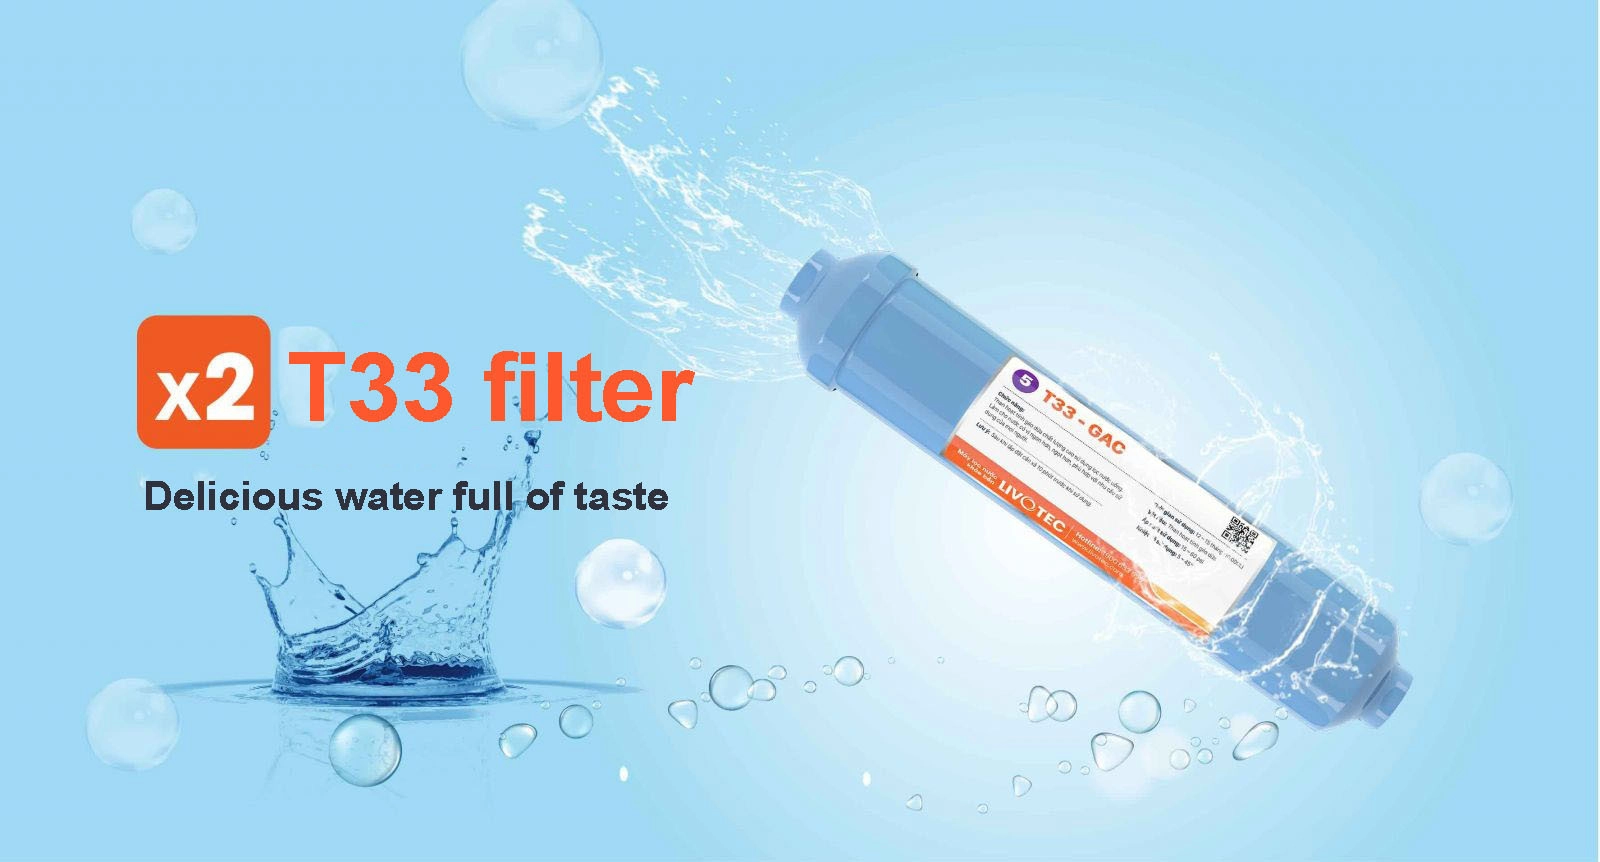 X2 T33-GAC filter - Increase X2 water sweetness